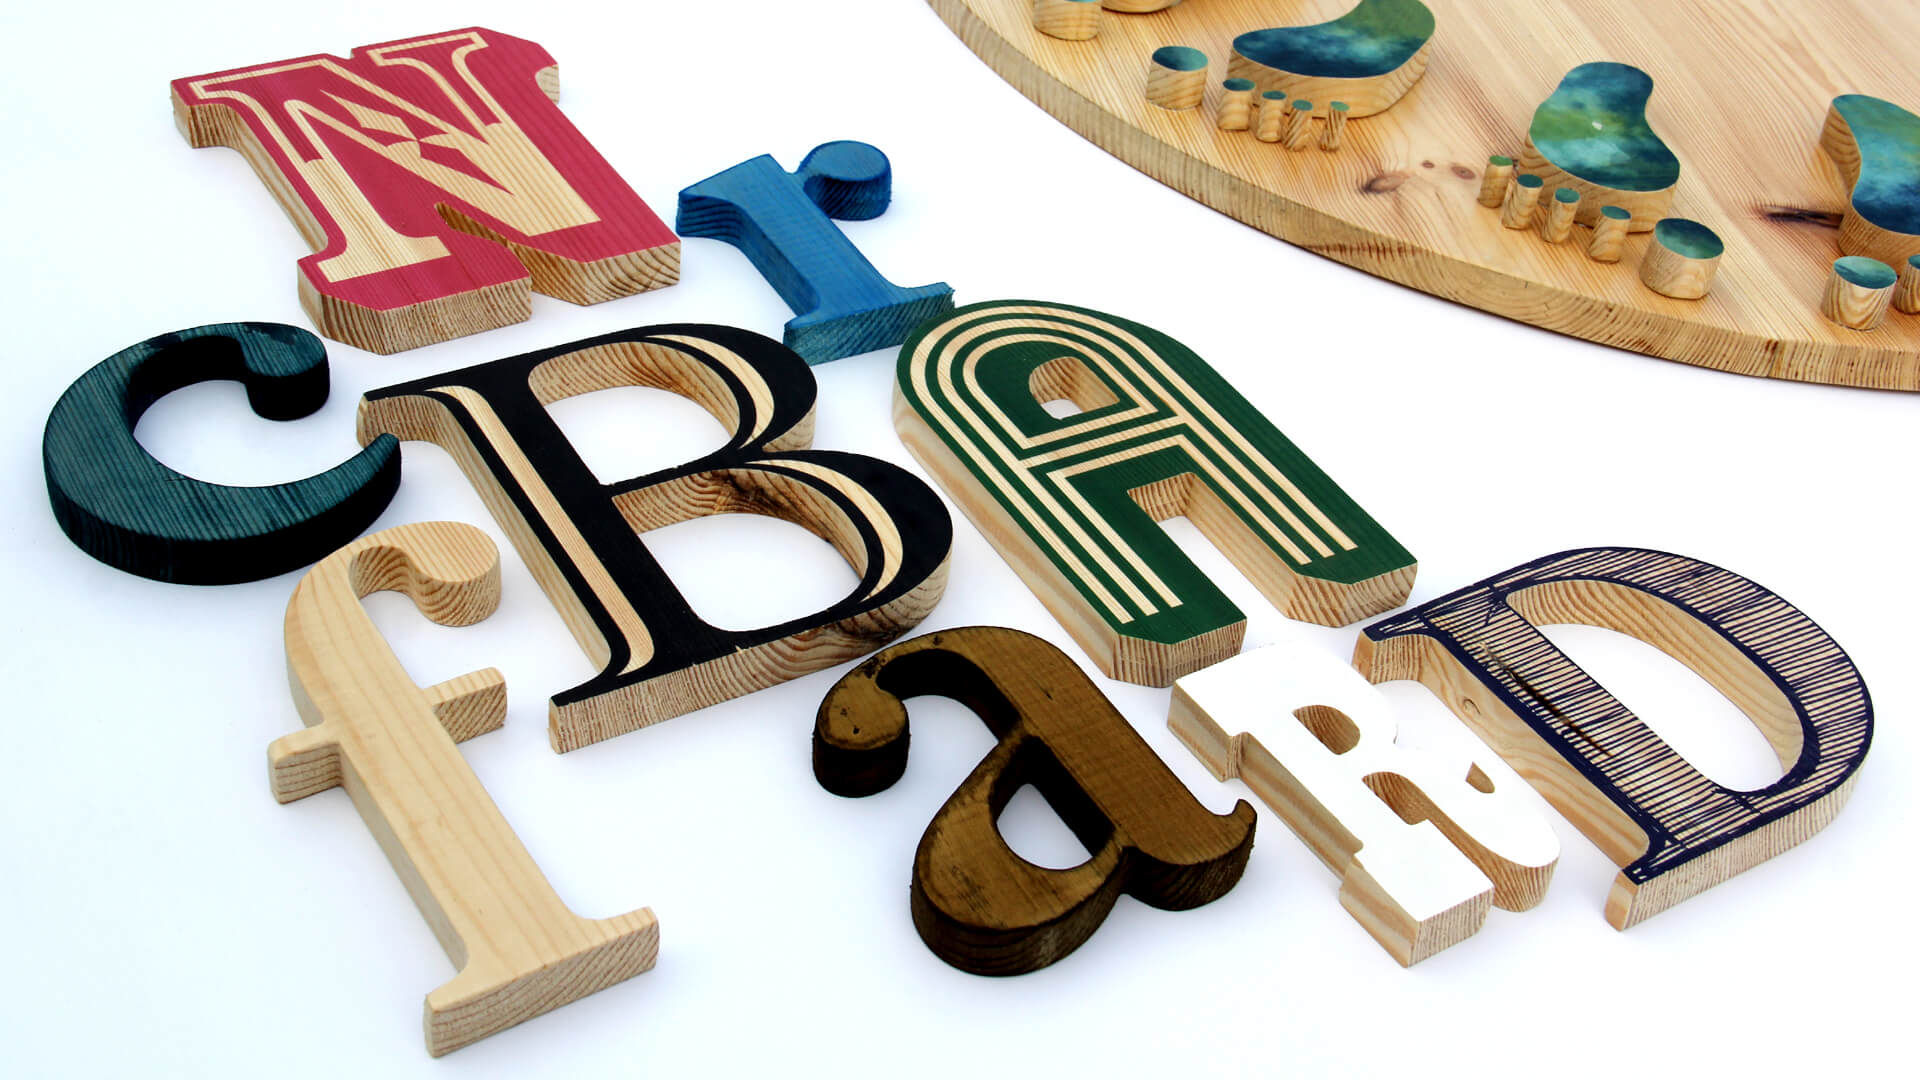 letras de madera - letras-decorativas-de-madera-letras-decorativas-de-madera-letras-de-color-de-madera